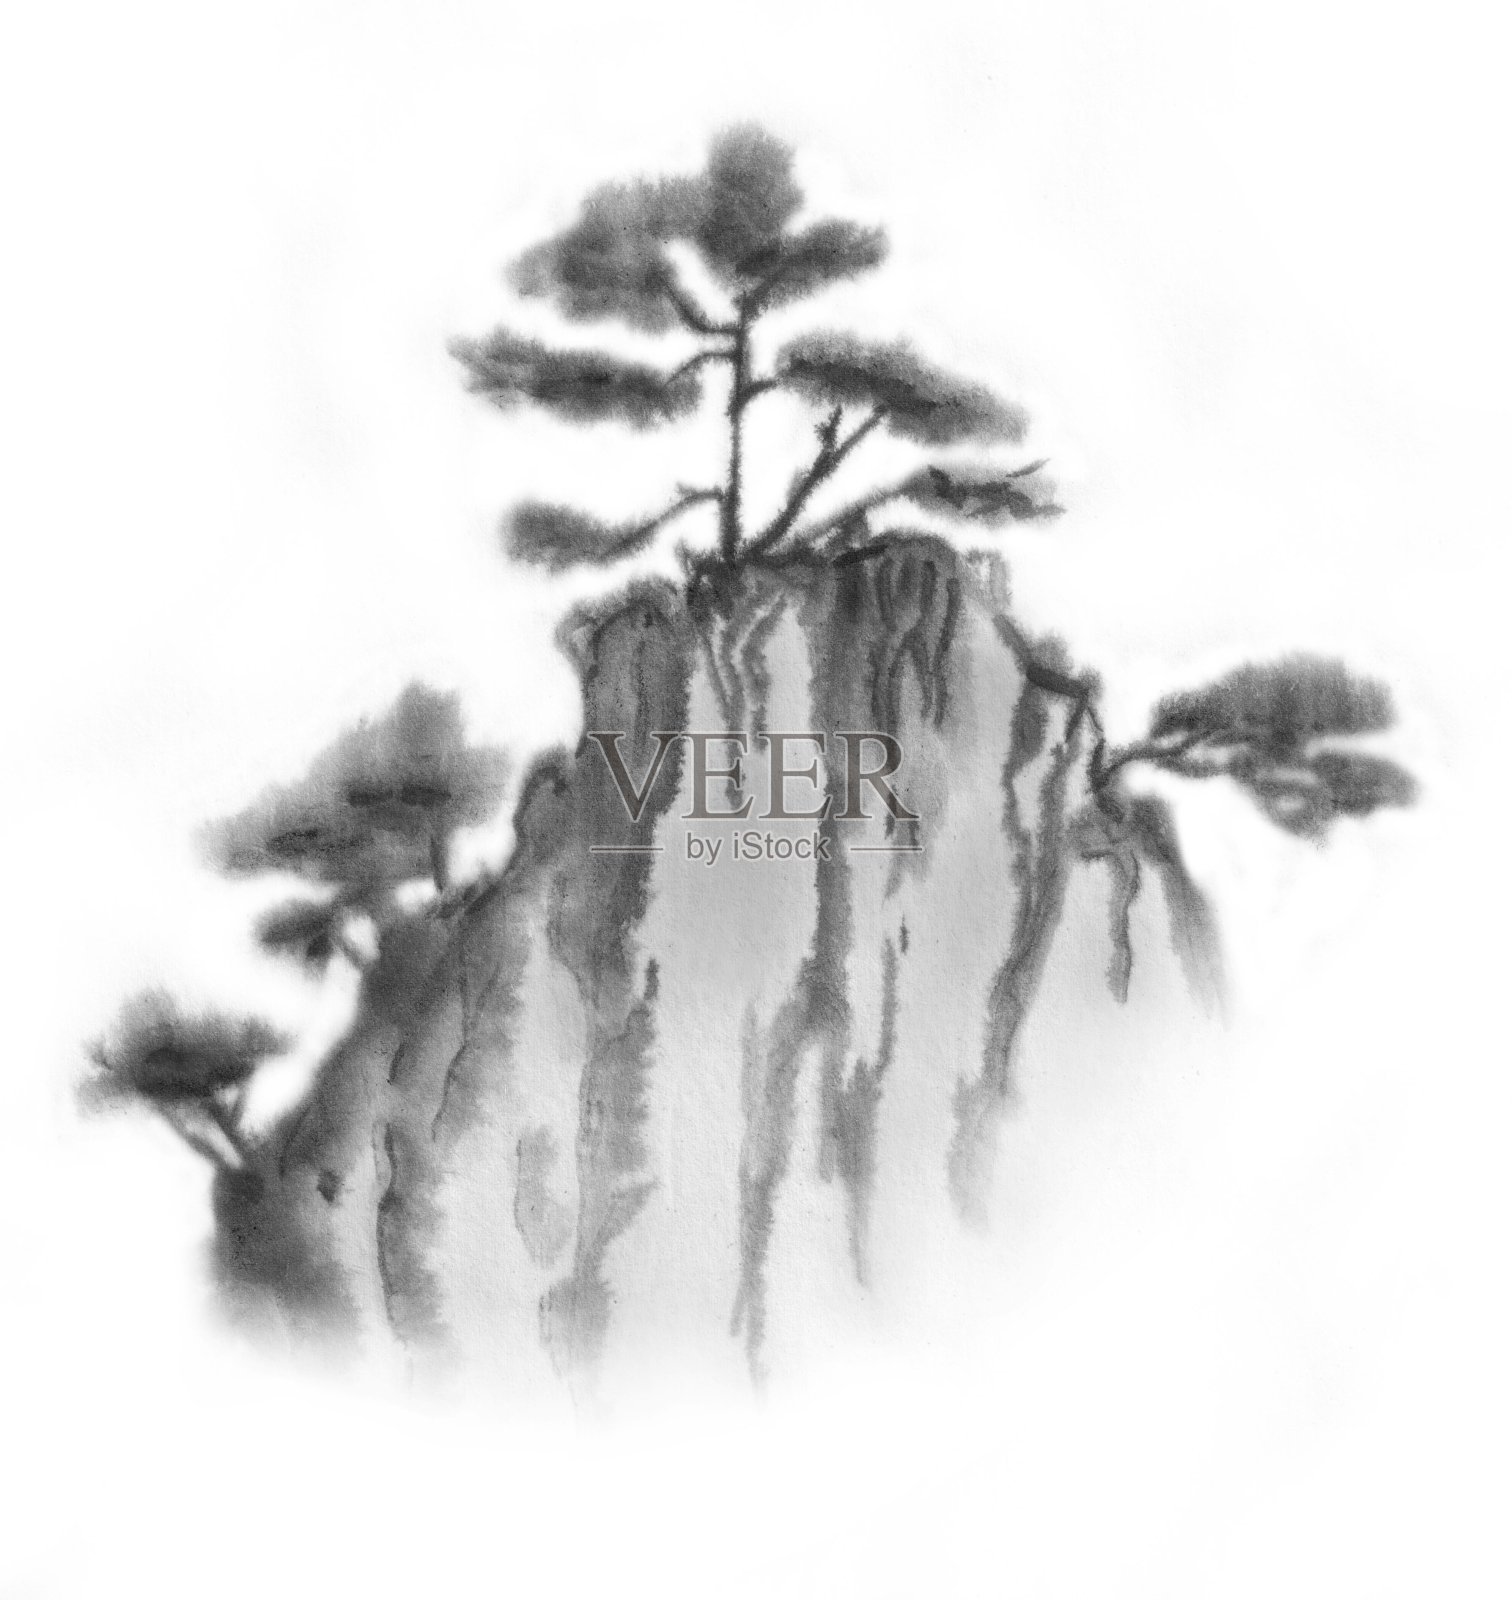 背景与山脉。墨山风景。山在雾中。山上有树。墨水的形象。插画图片素材